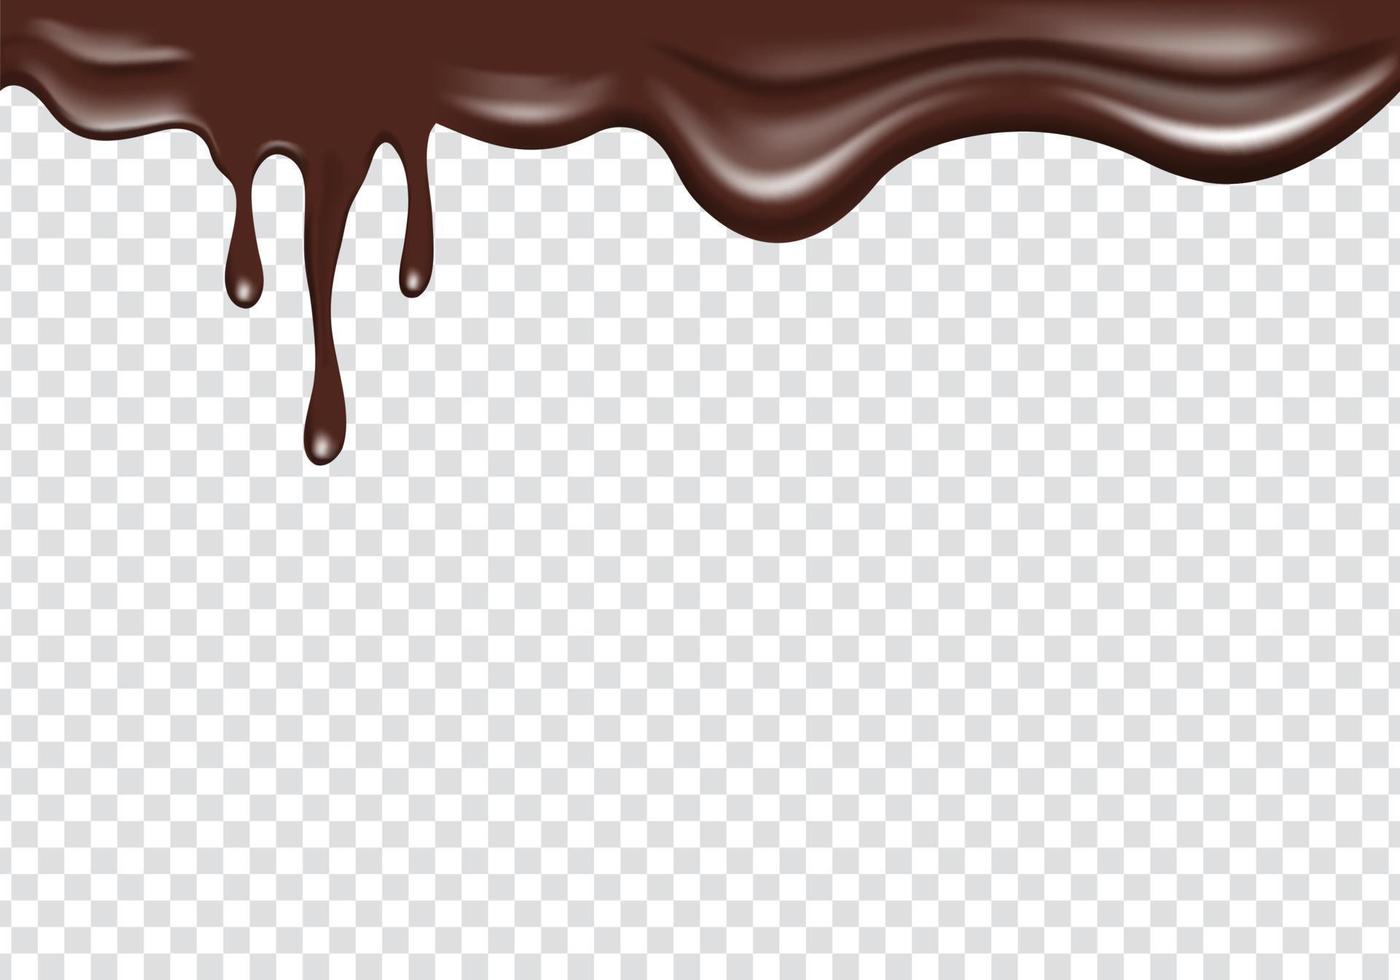 líquido de chocolate realista fluindo se espalhando da borda superior. moldura de borda superior decoração de pingos de derretimento de chocolate vetor